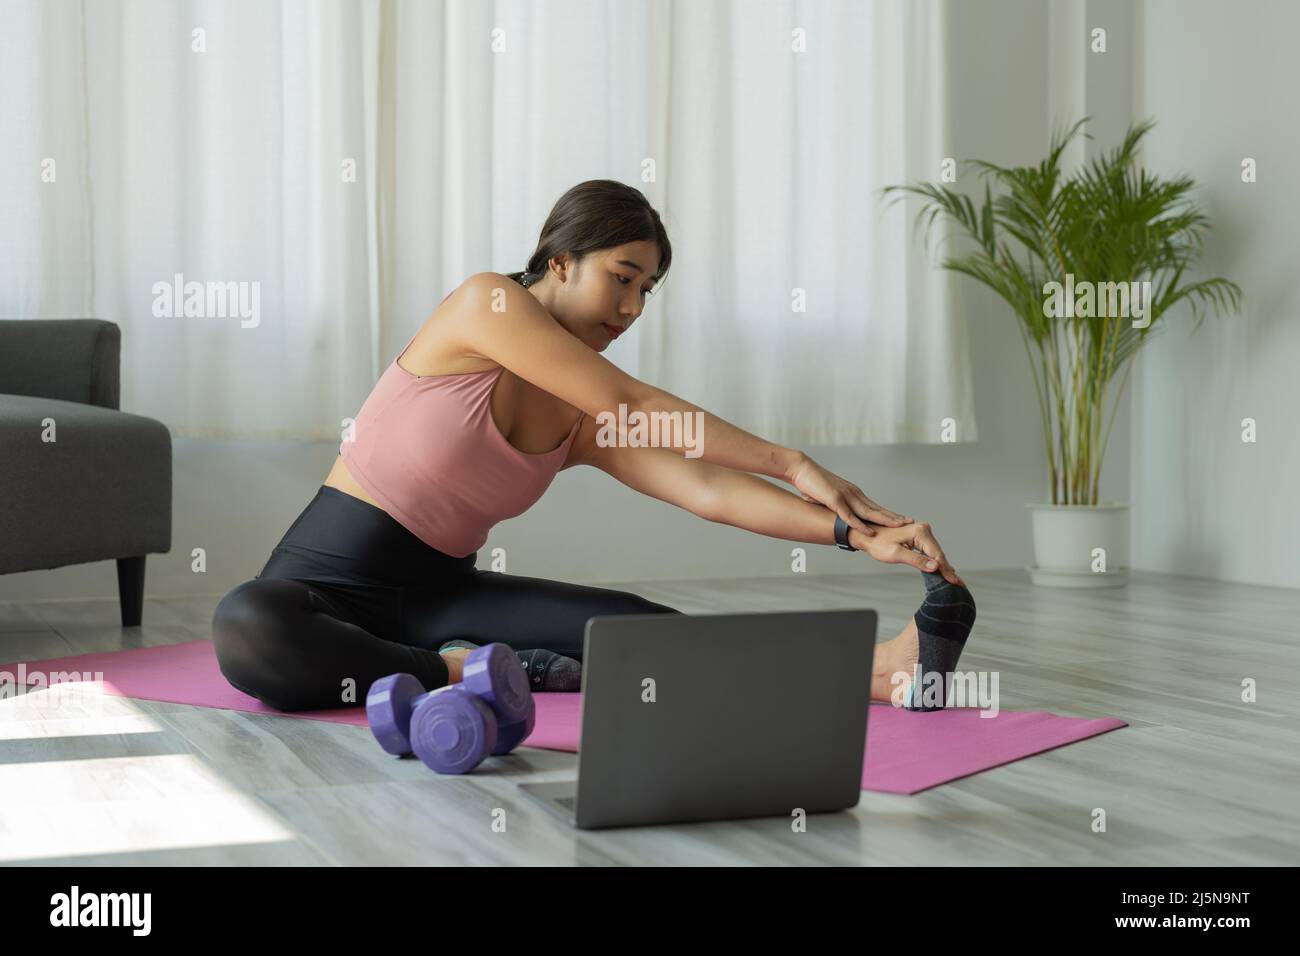 Die junge Frau trainiert zu Hause Yoga. Fitness, Training, gesundes Leben und Diät-Konzept Stockfoto